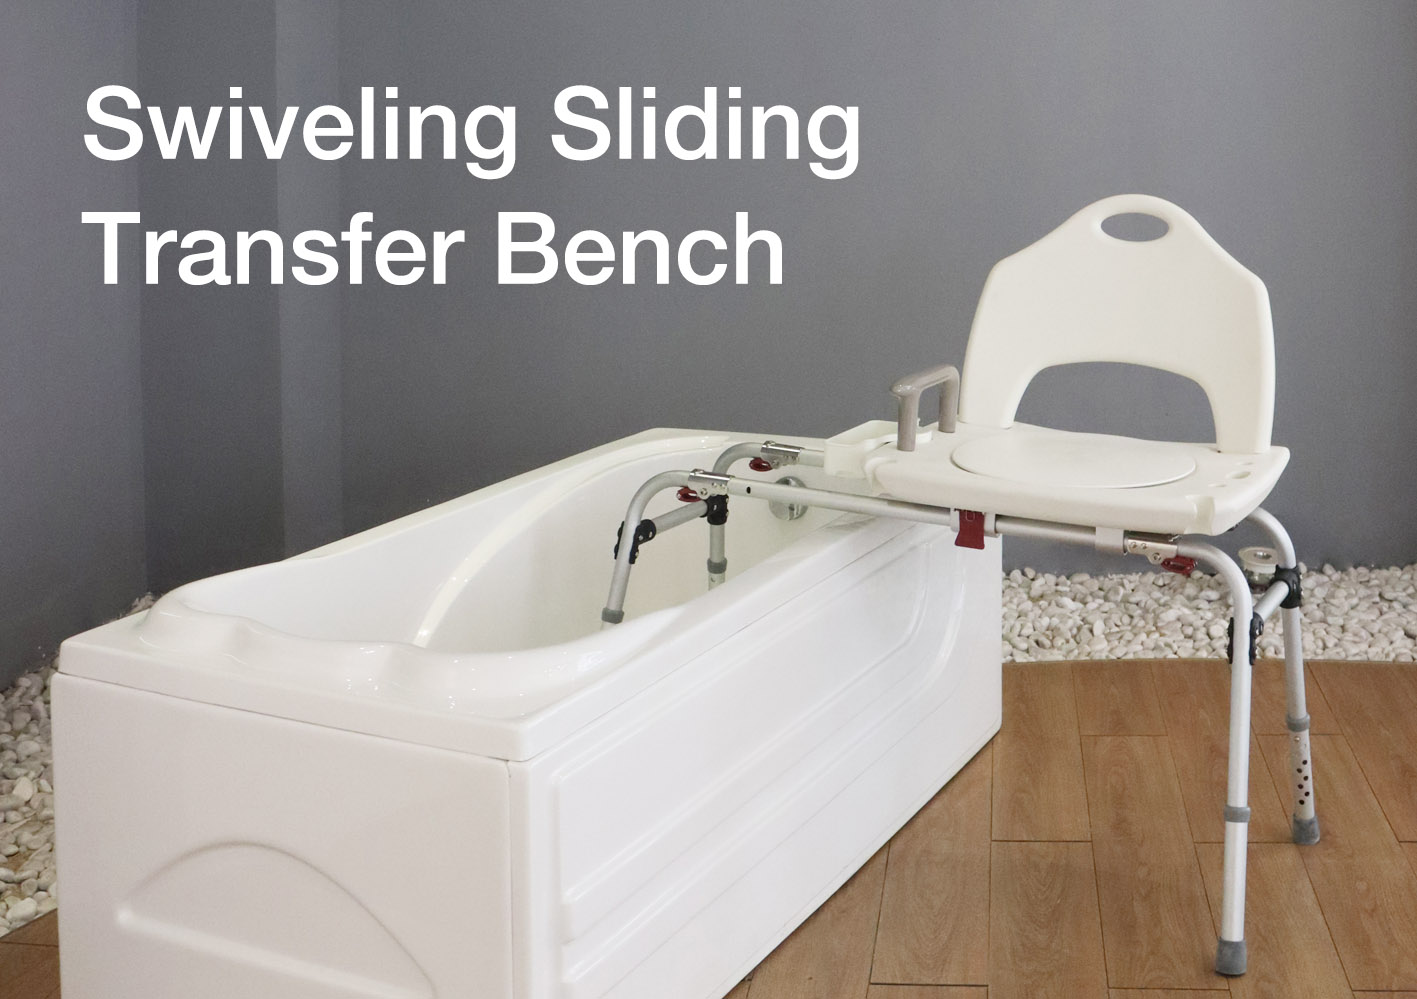 3637 Swiveling Sliding Transfer Bench